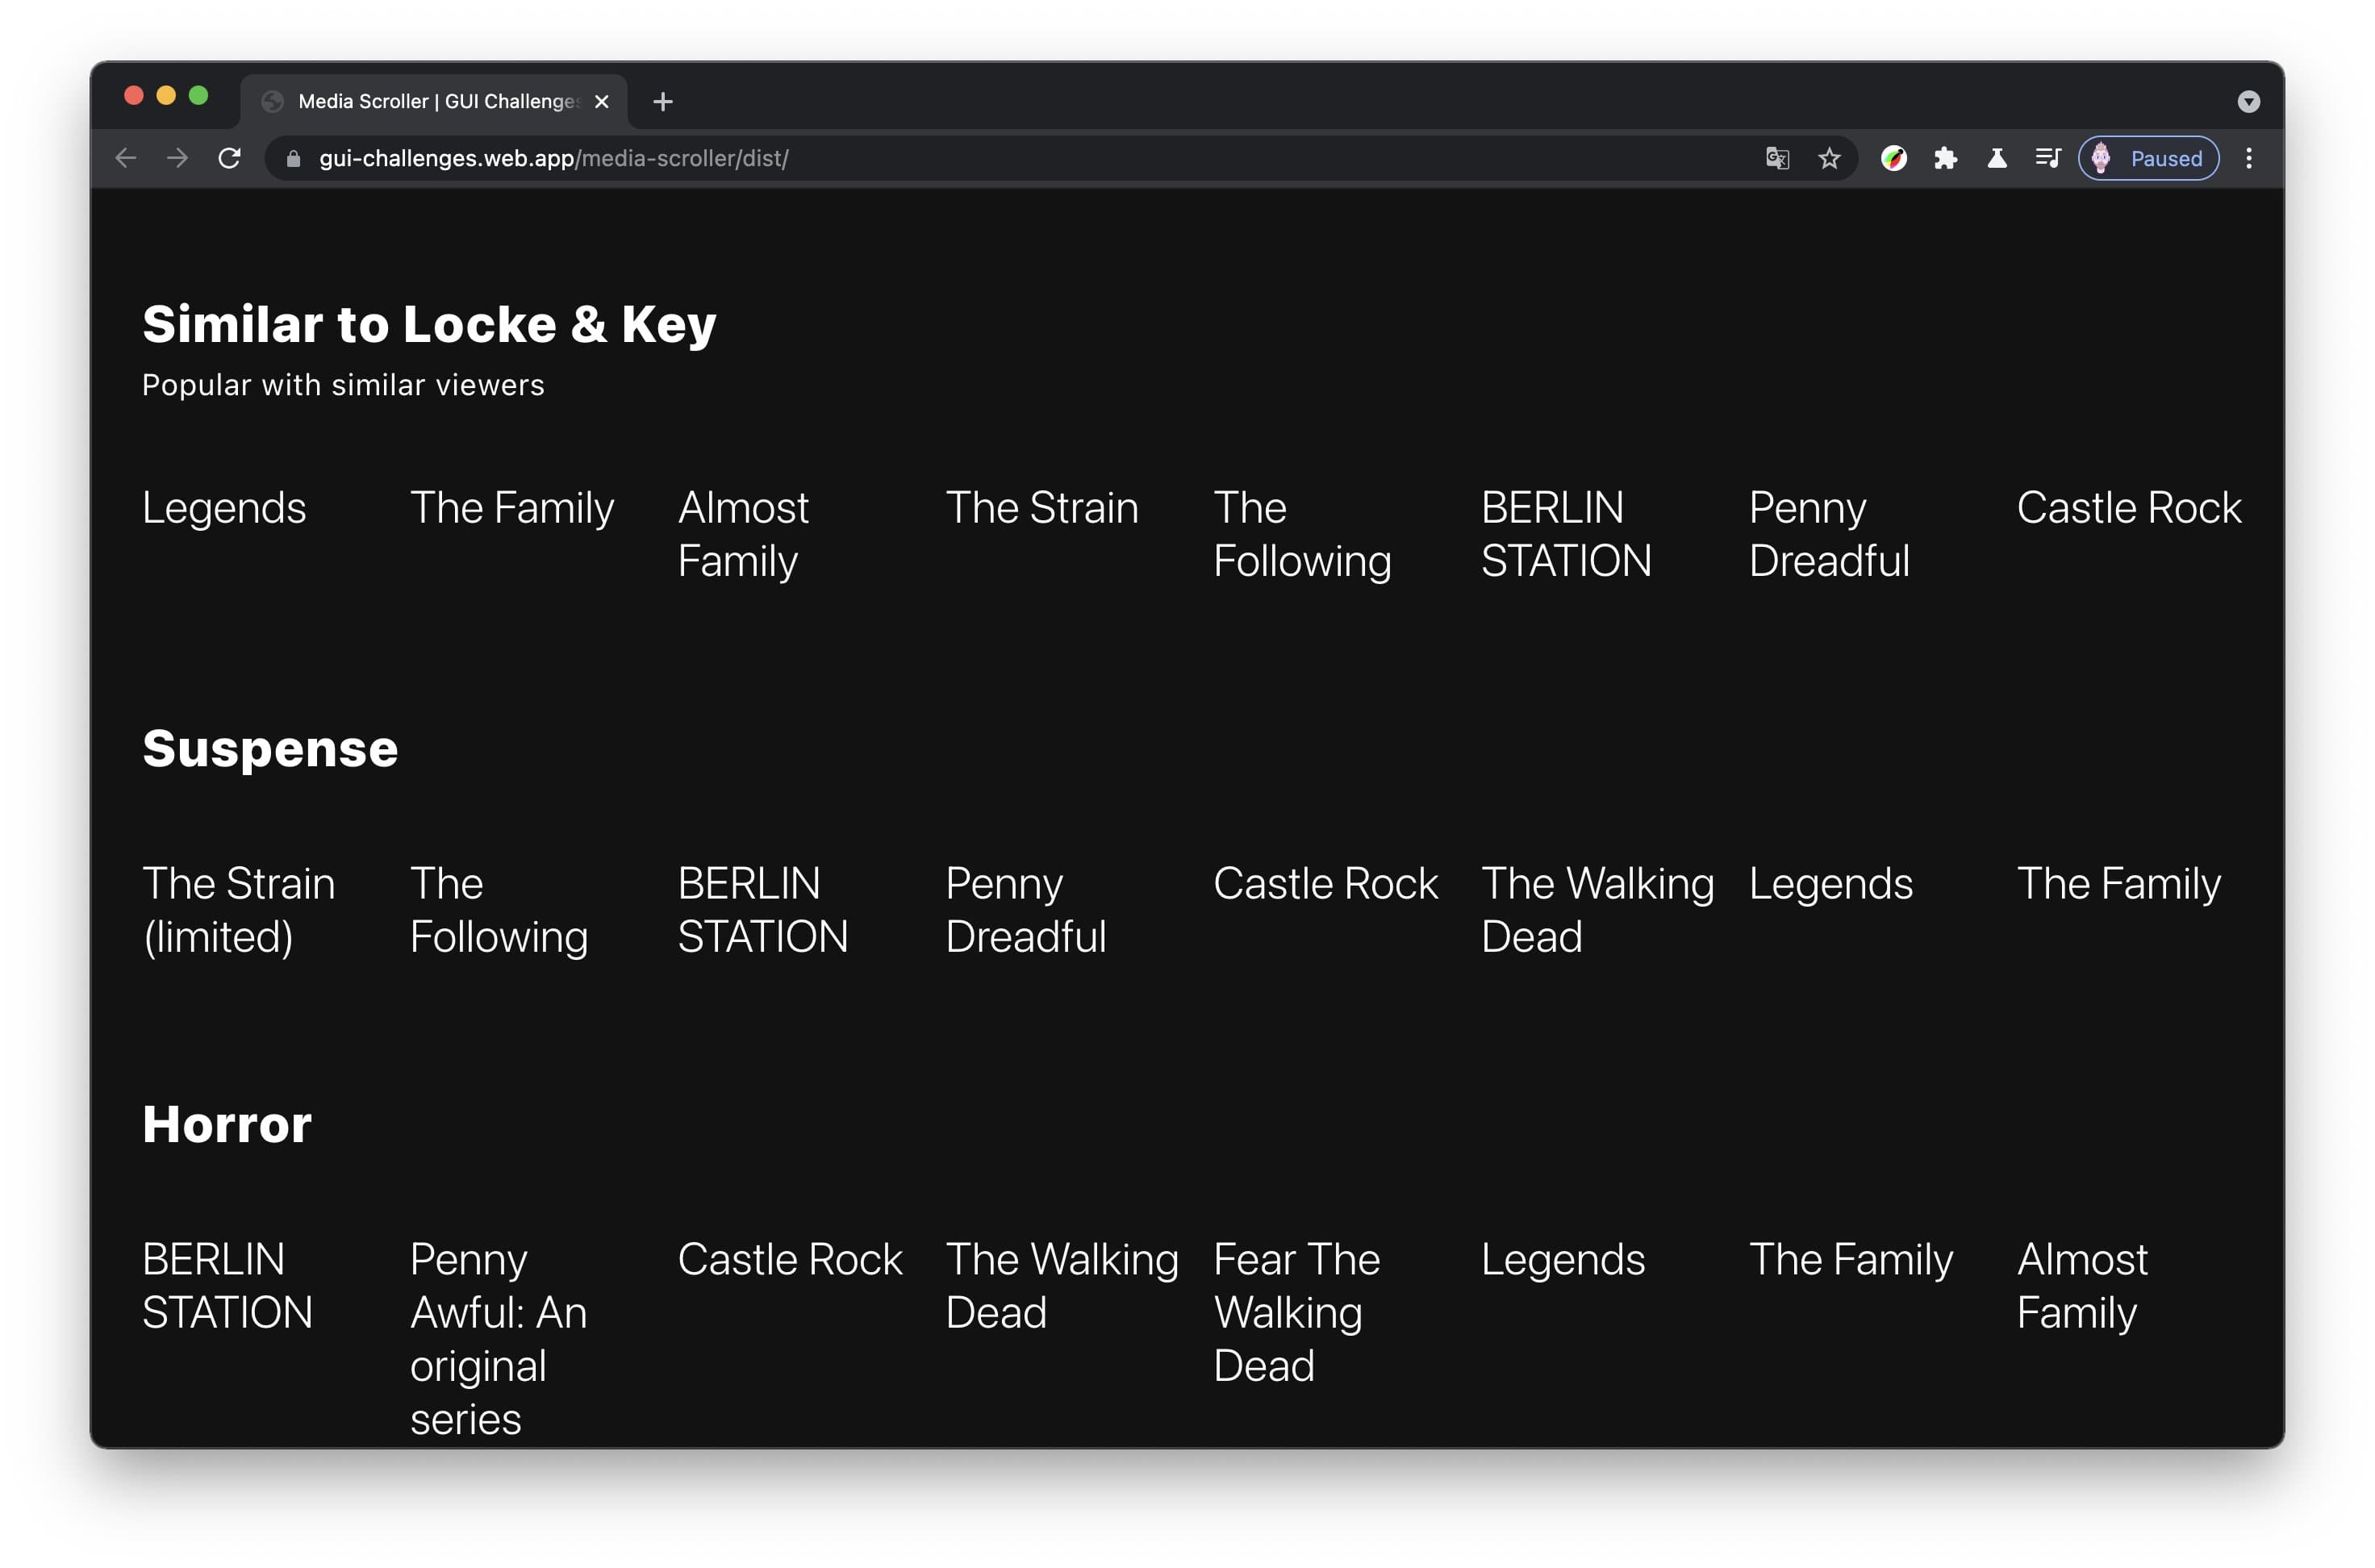 Captura de pantalla de la interfaz de un carrusel de programas de TV sin miniaturas y se muestran muchos títulos.